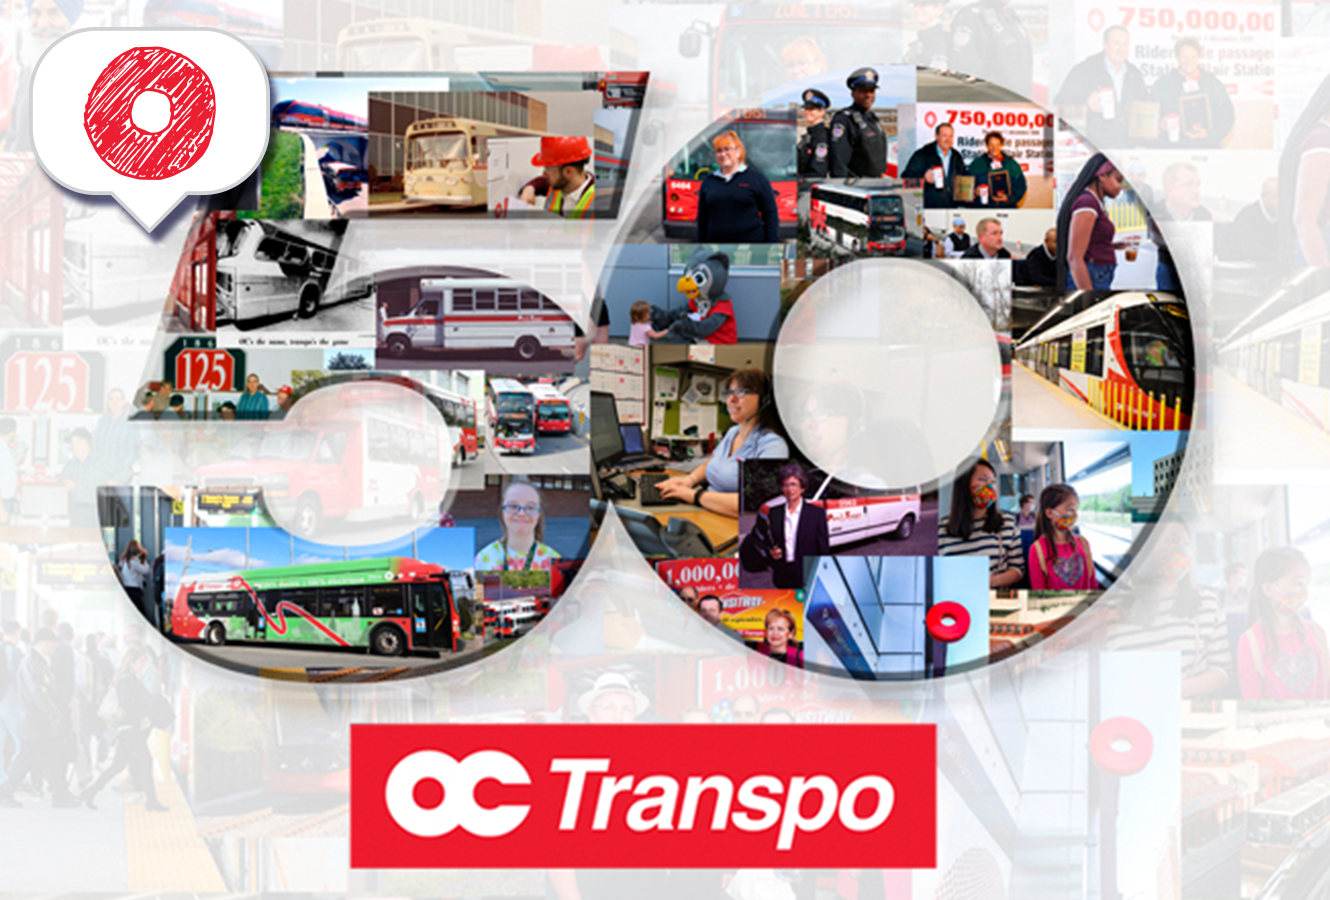 Image - Celebrating 50 years of OC Transpo